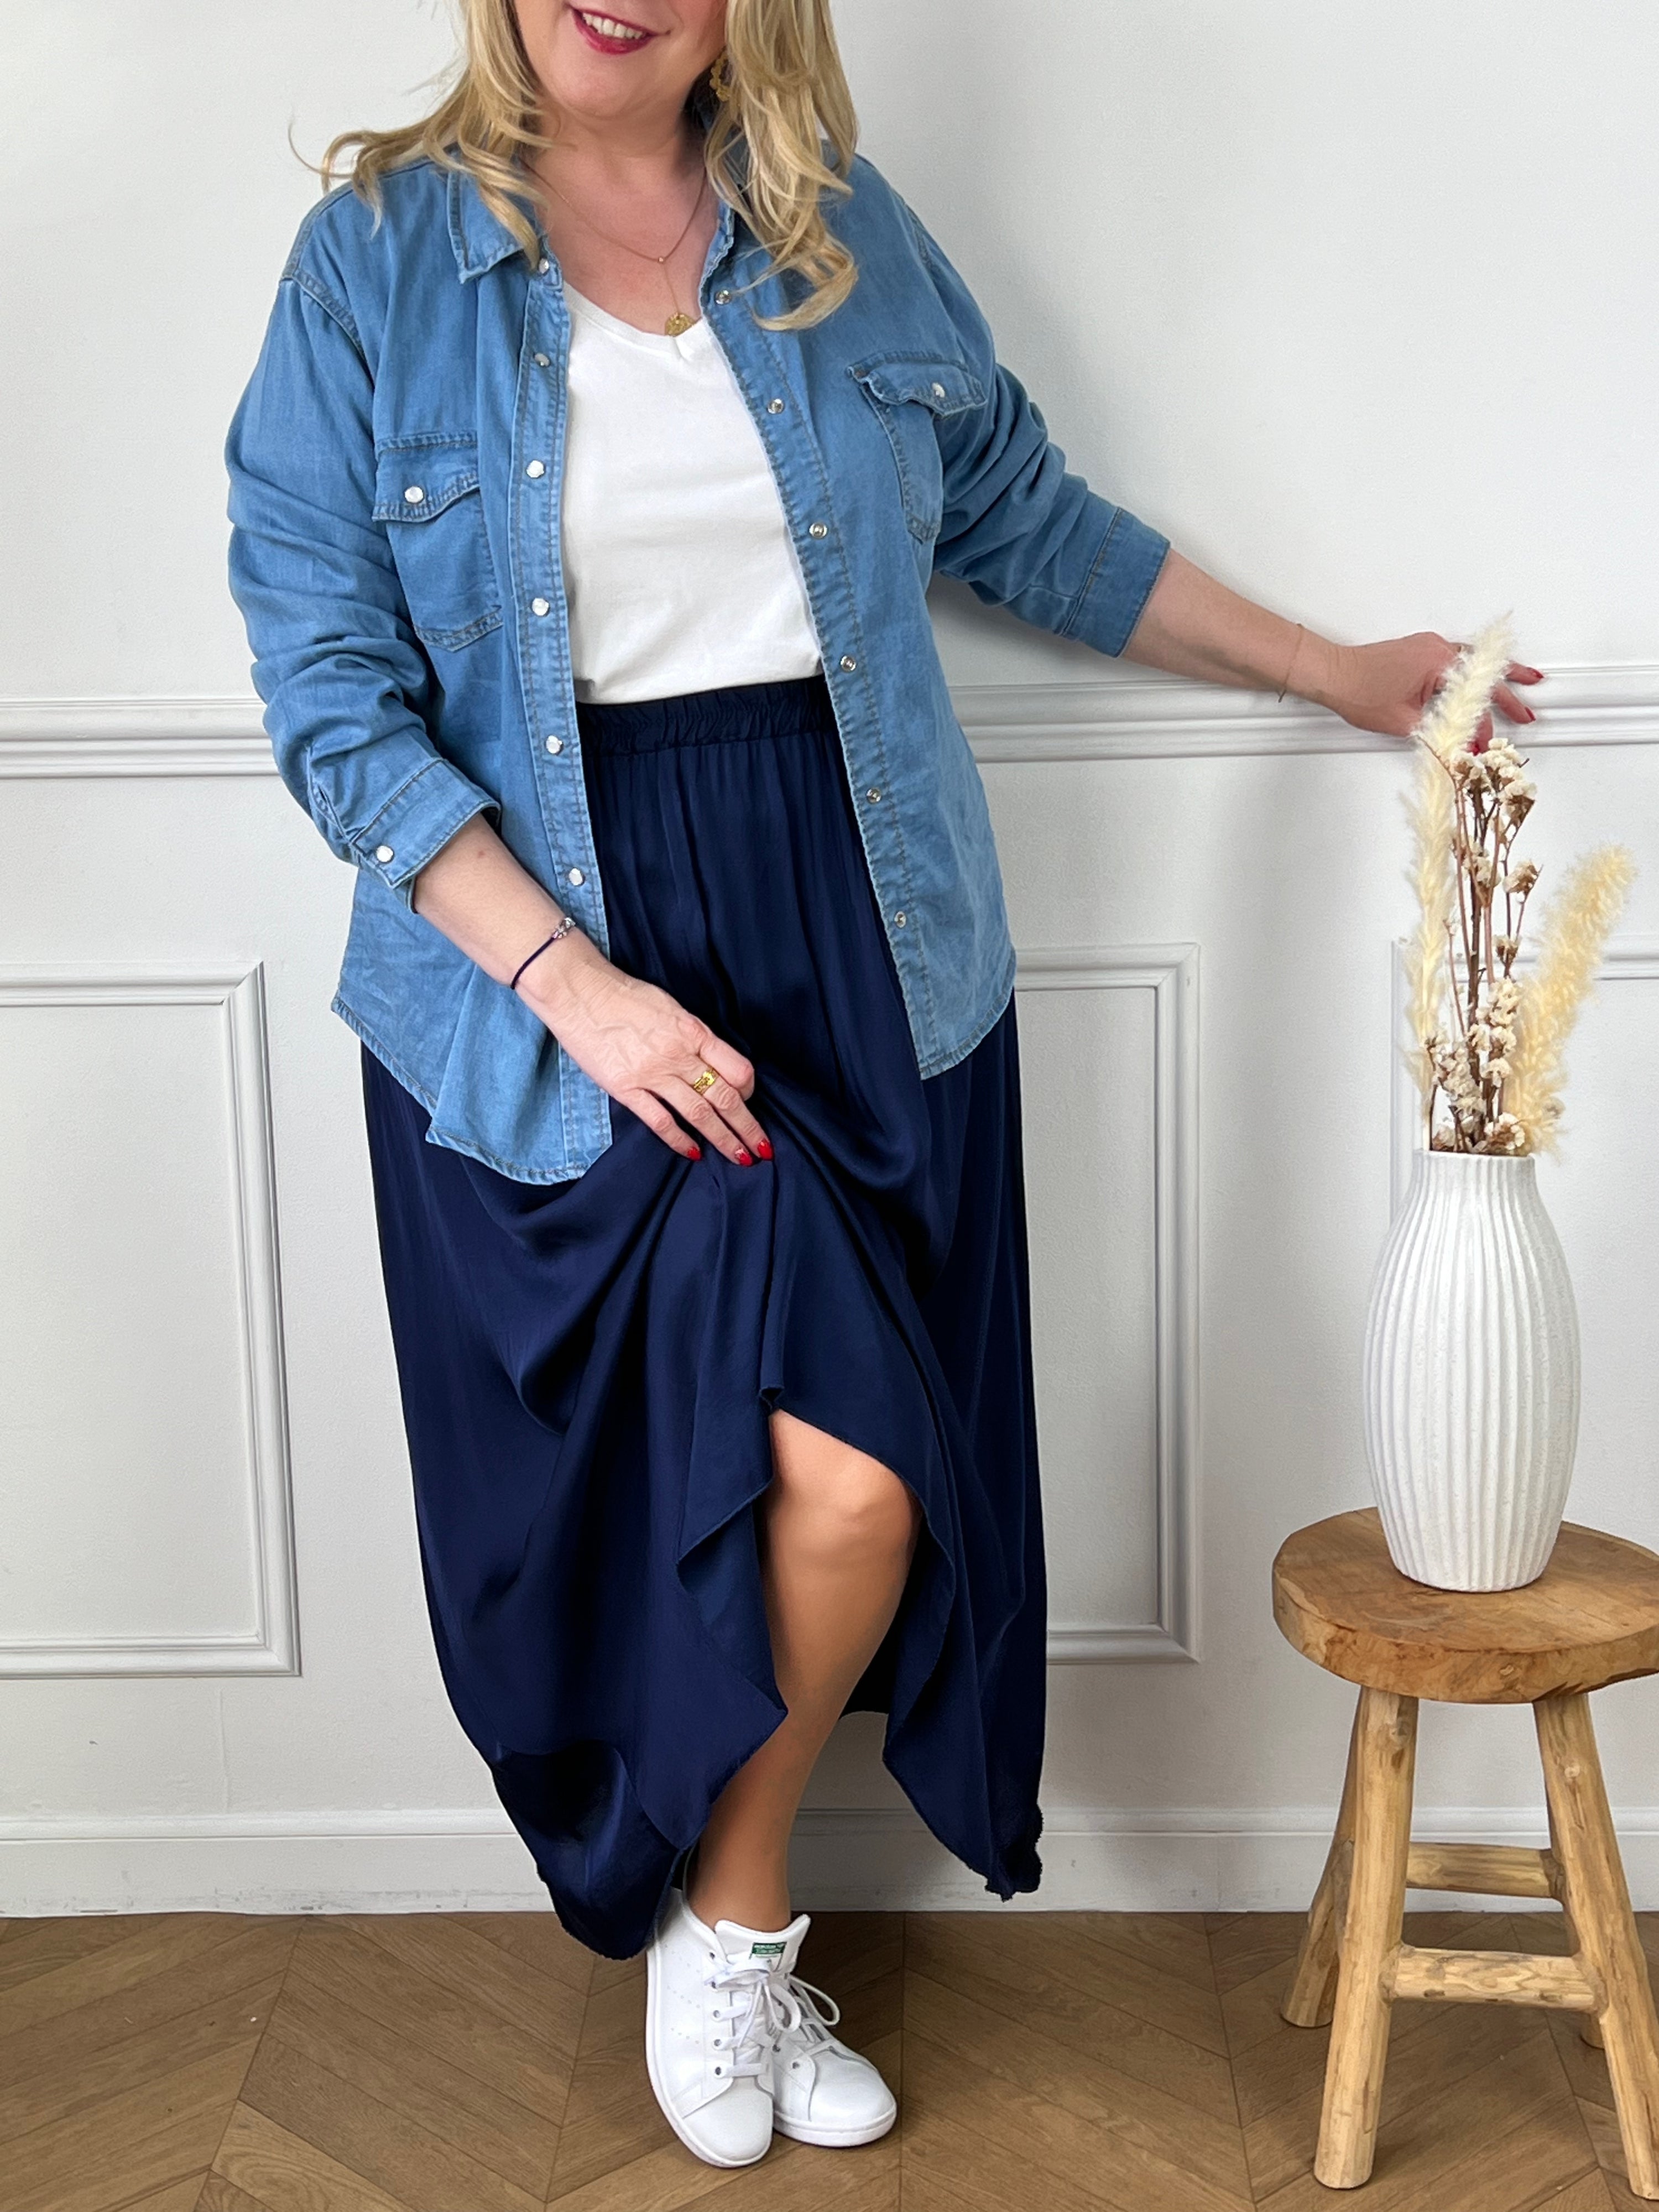 Découvrez notre Jupe Longue Satin bleu : Anela. Profitez d'une pièce à la fois fluide et ample pour un confort optimal, grâce à sa taille élastique. Soyez élégante en toute simplicité avec cette jupe en satin rose.